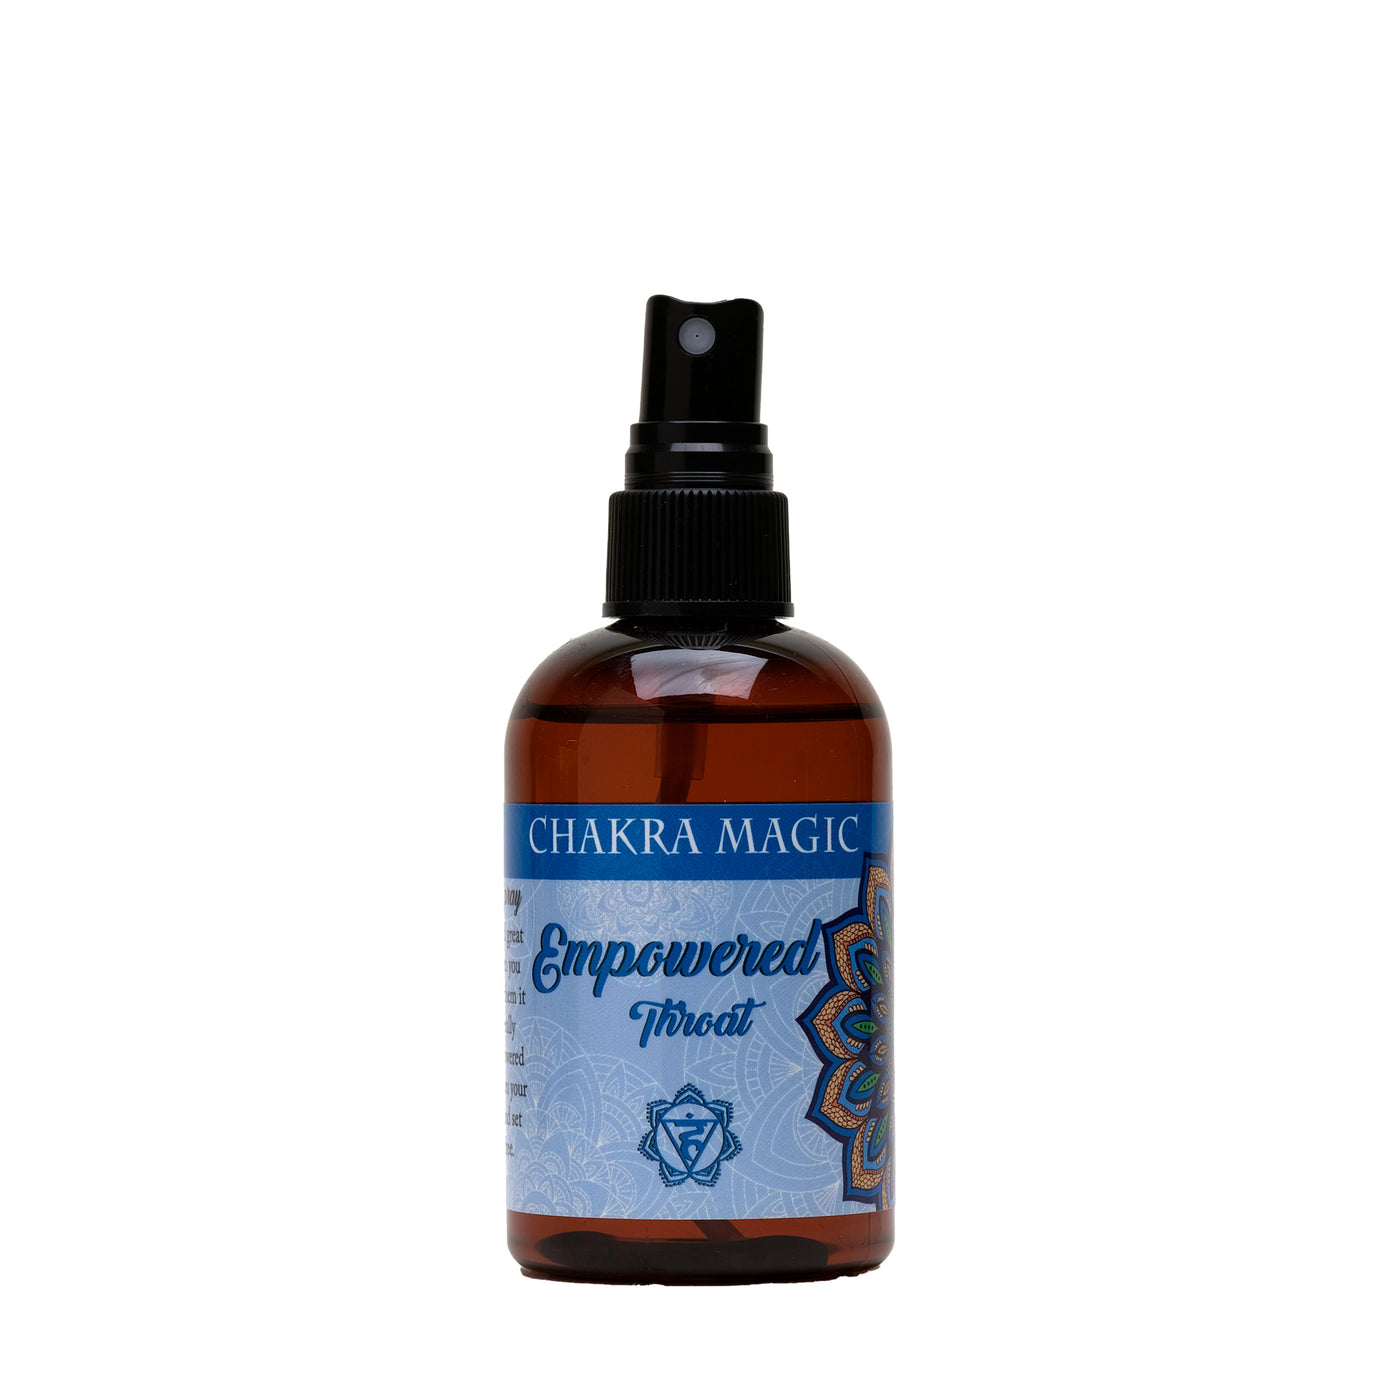 Chakra Magic Empowered Spray - Throat Chakra